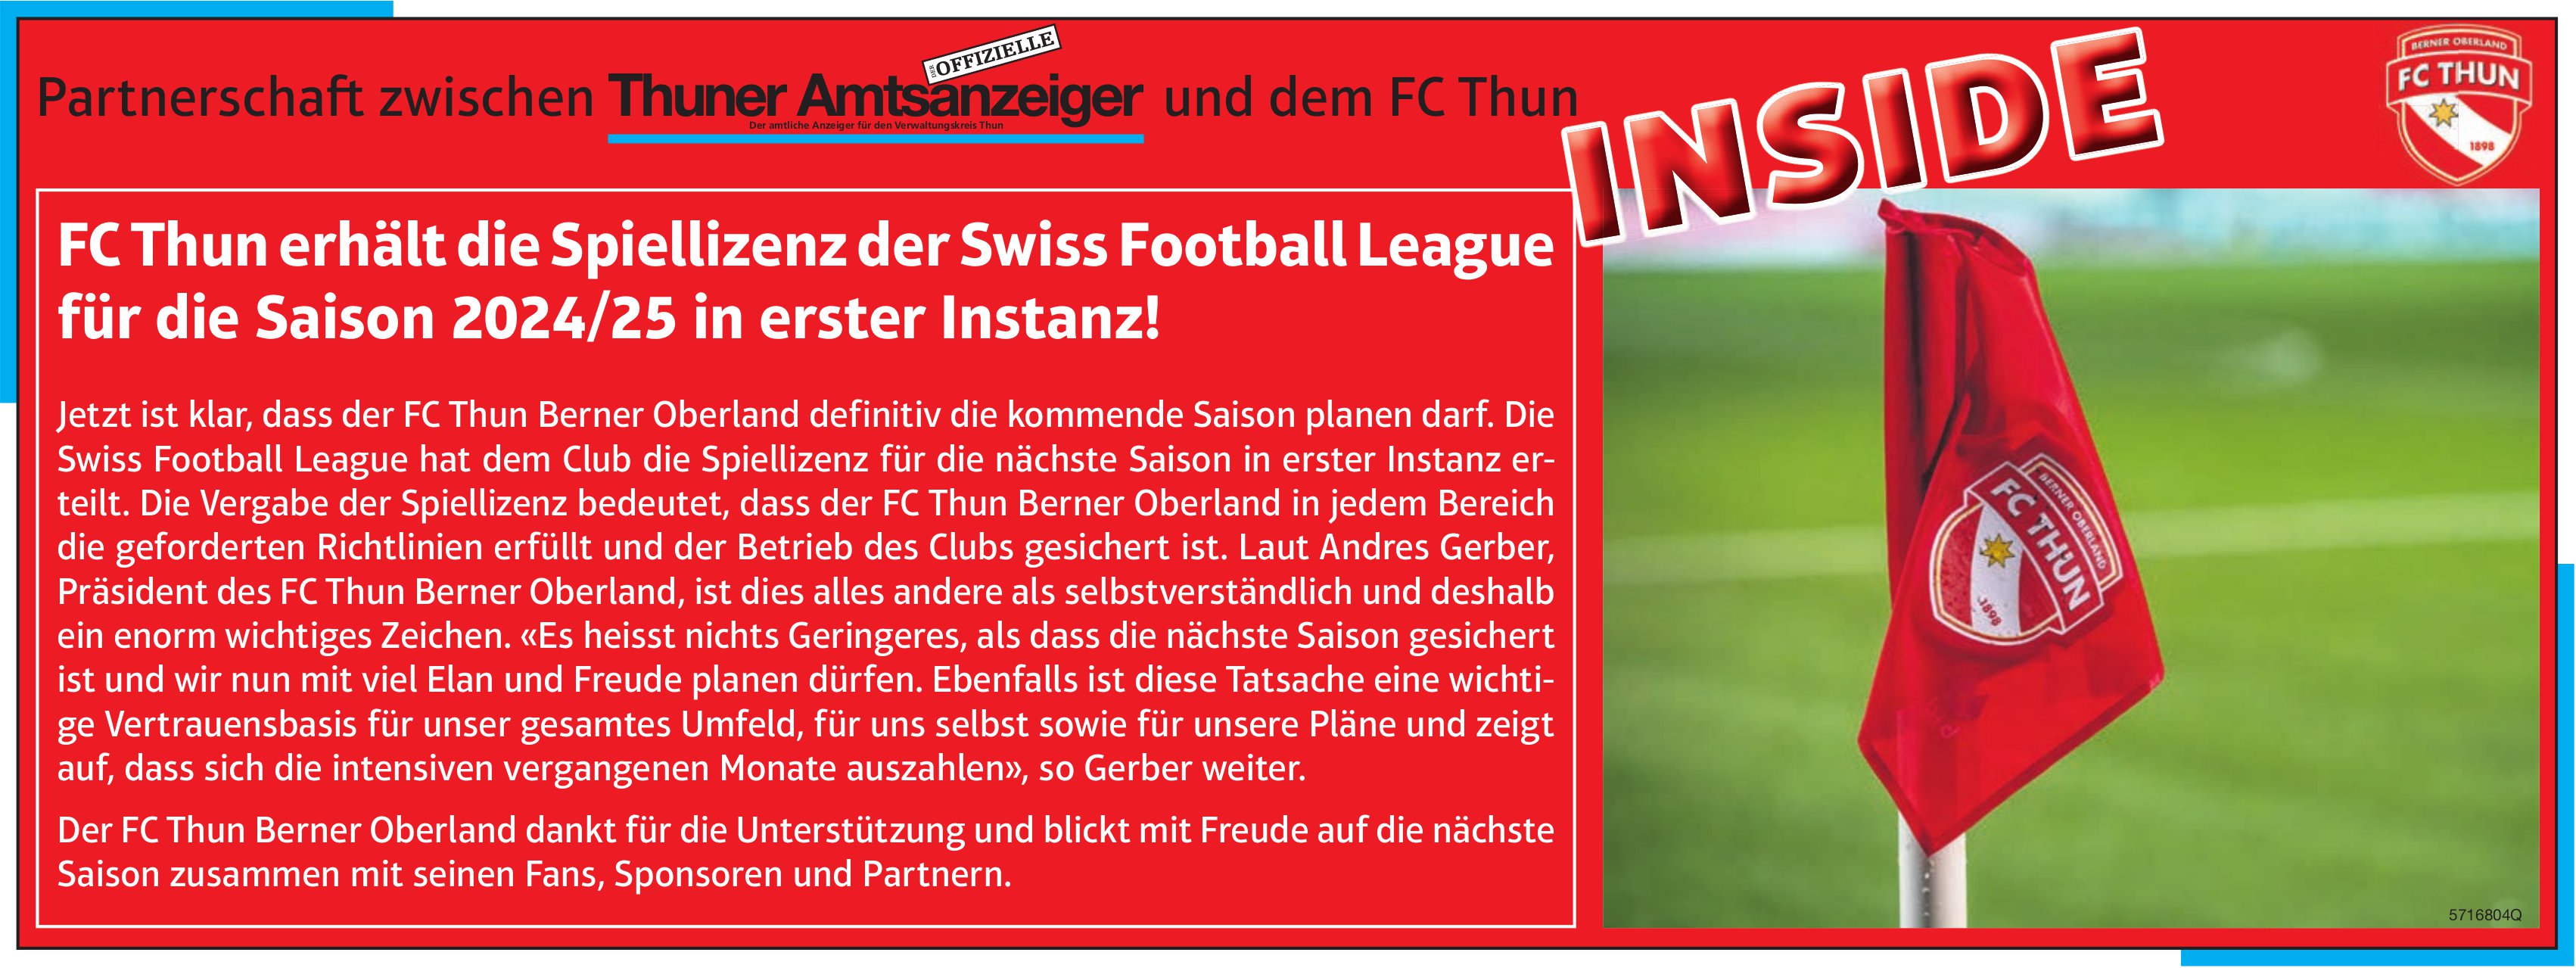 Thuner Amtsanzeiger / FC Thun, Inside: FC Thun erhält die Spiellizenz der Swiss Football League für die Saison 2024/25 in erster Instanz!